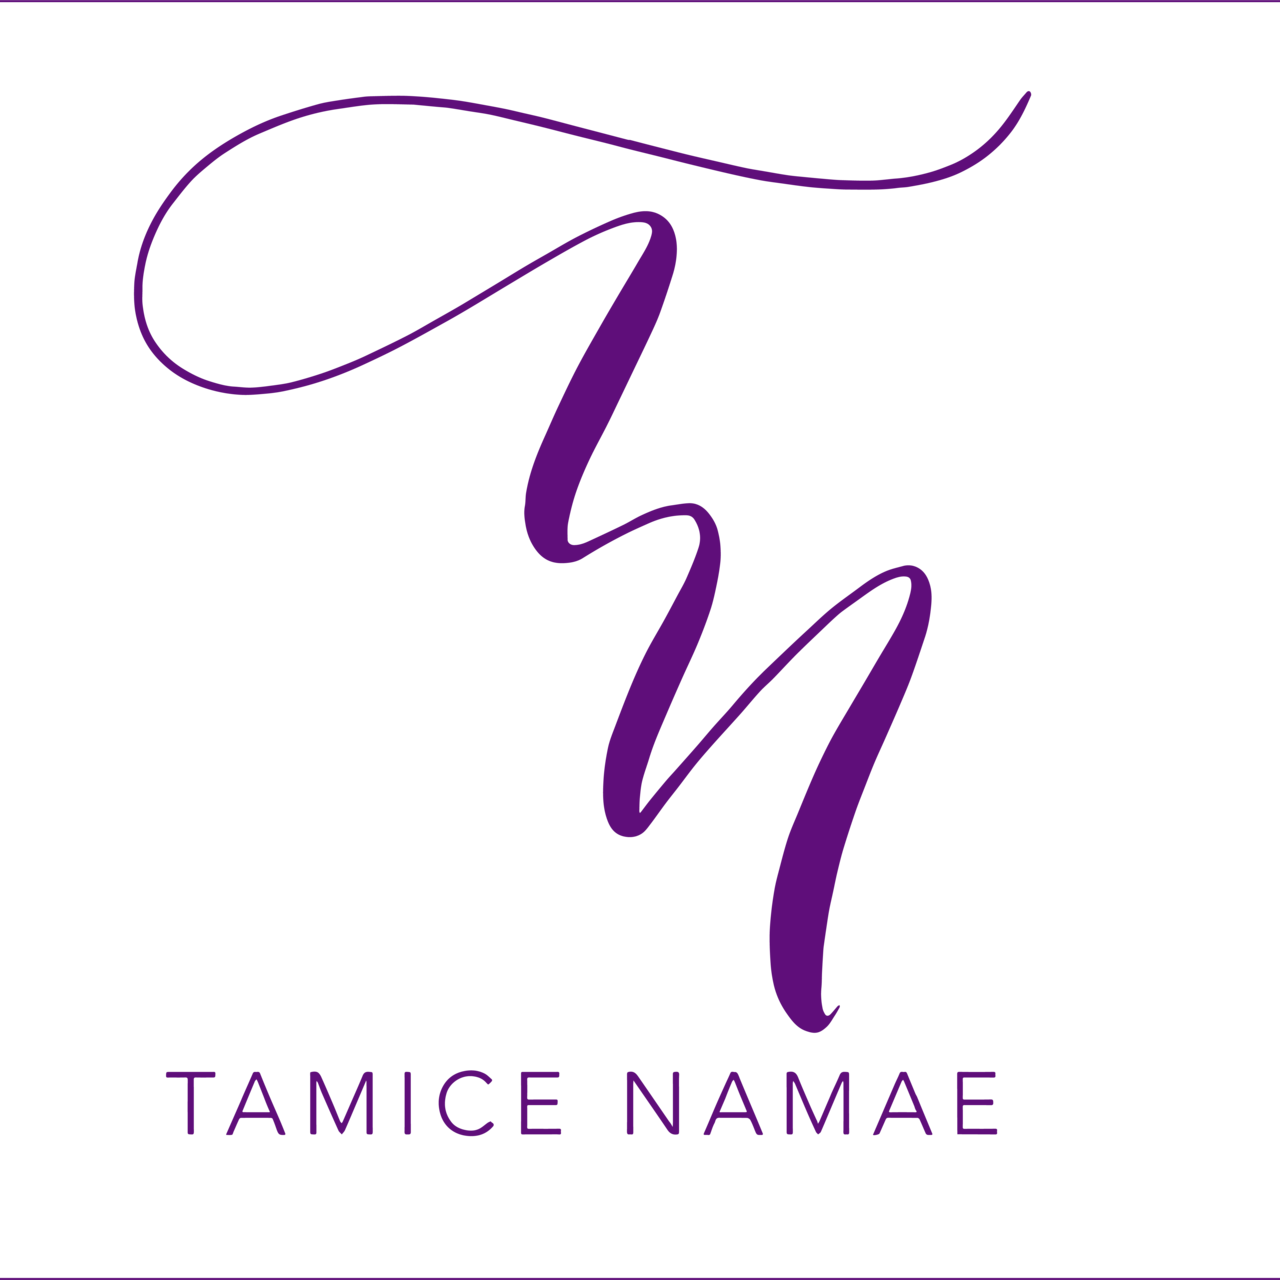 Tamice Namae Speaks